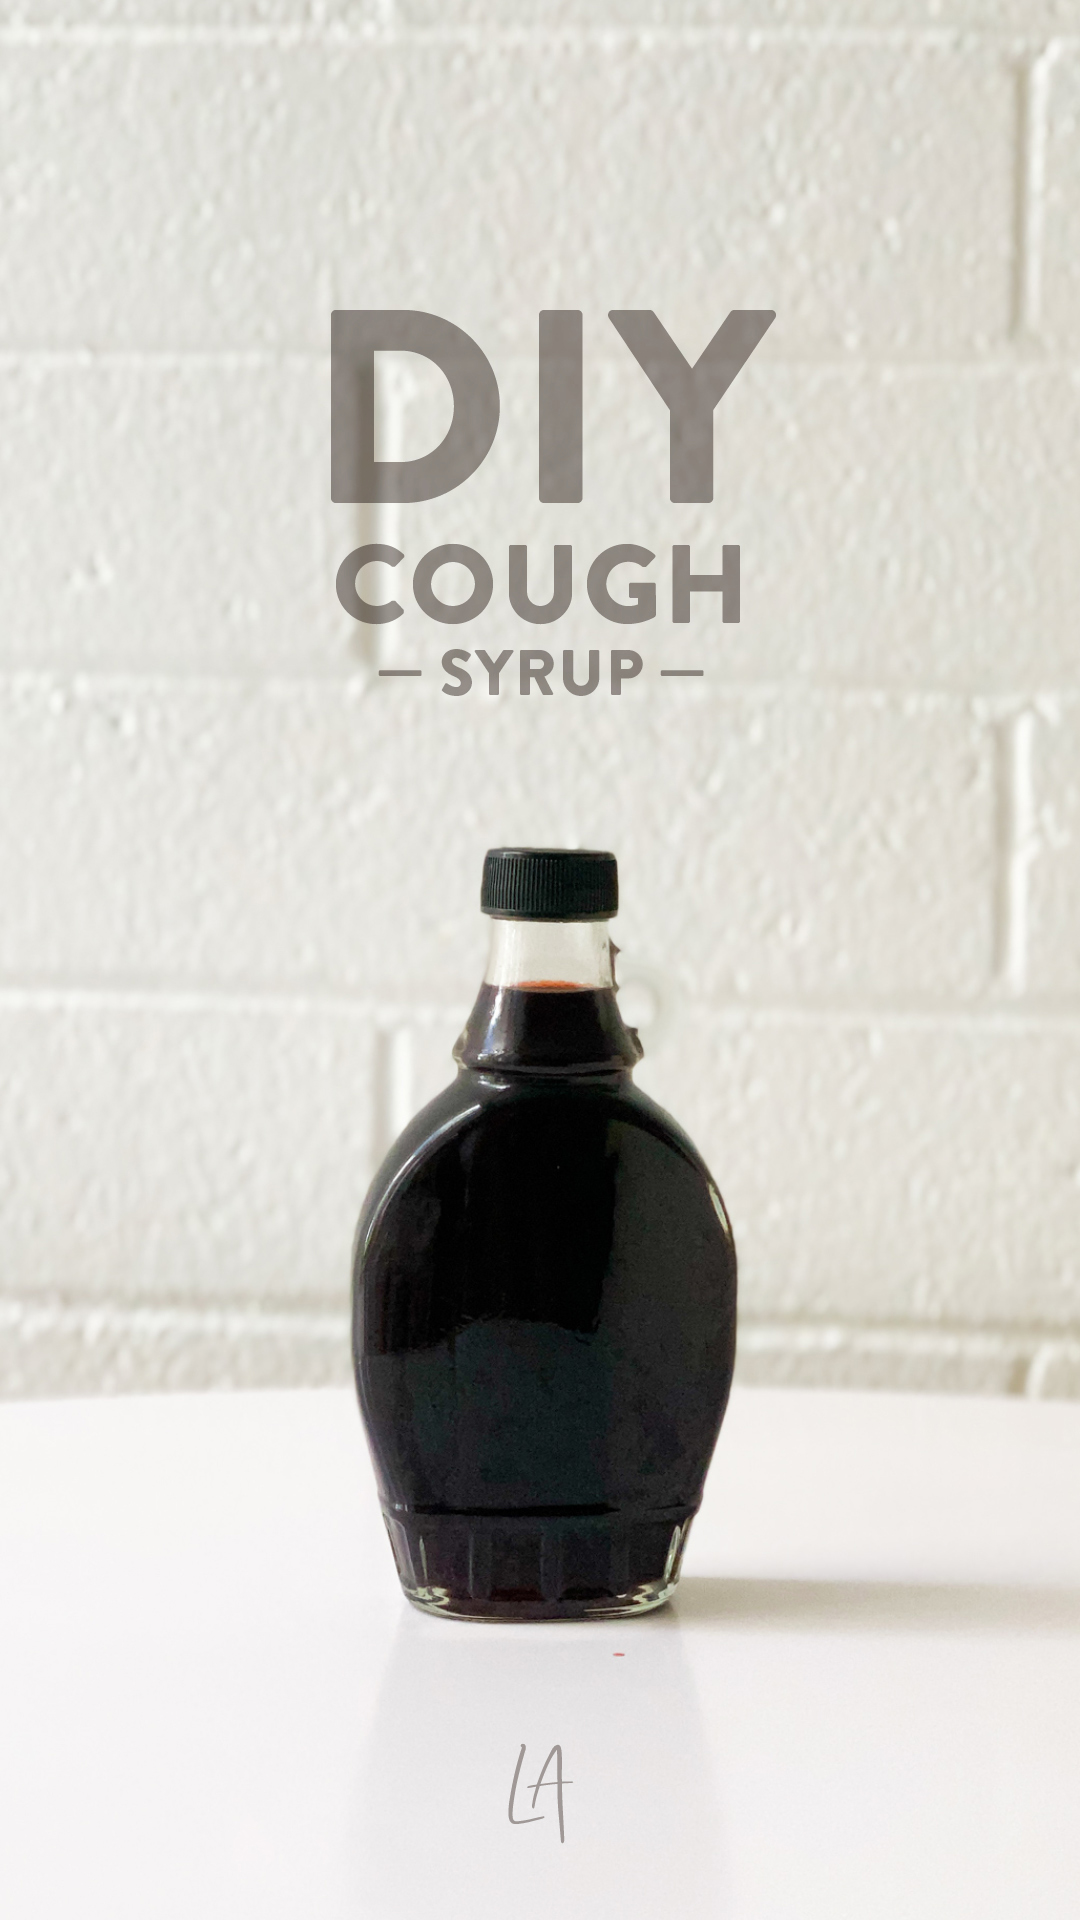 DIY Cough syrup recipe